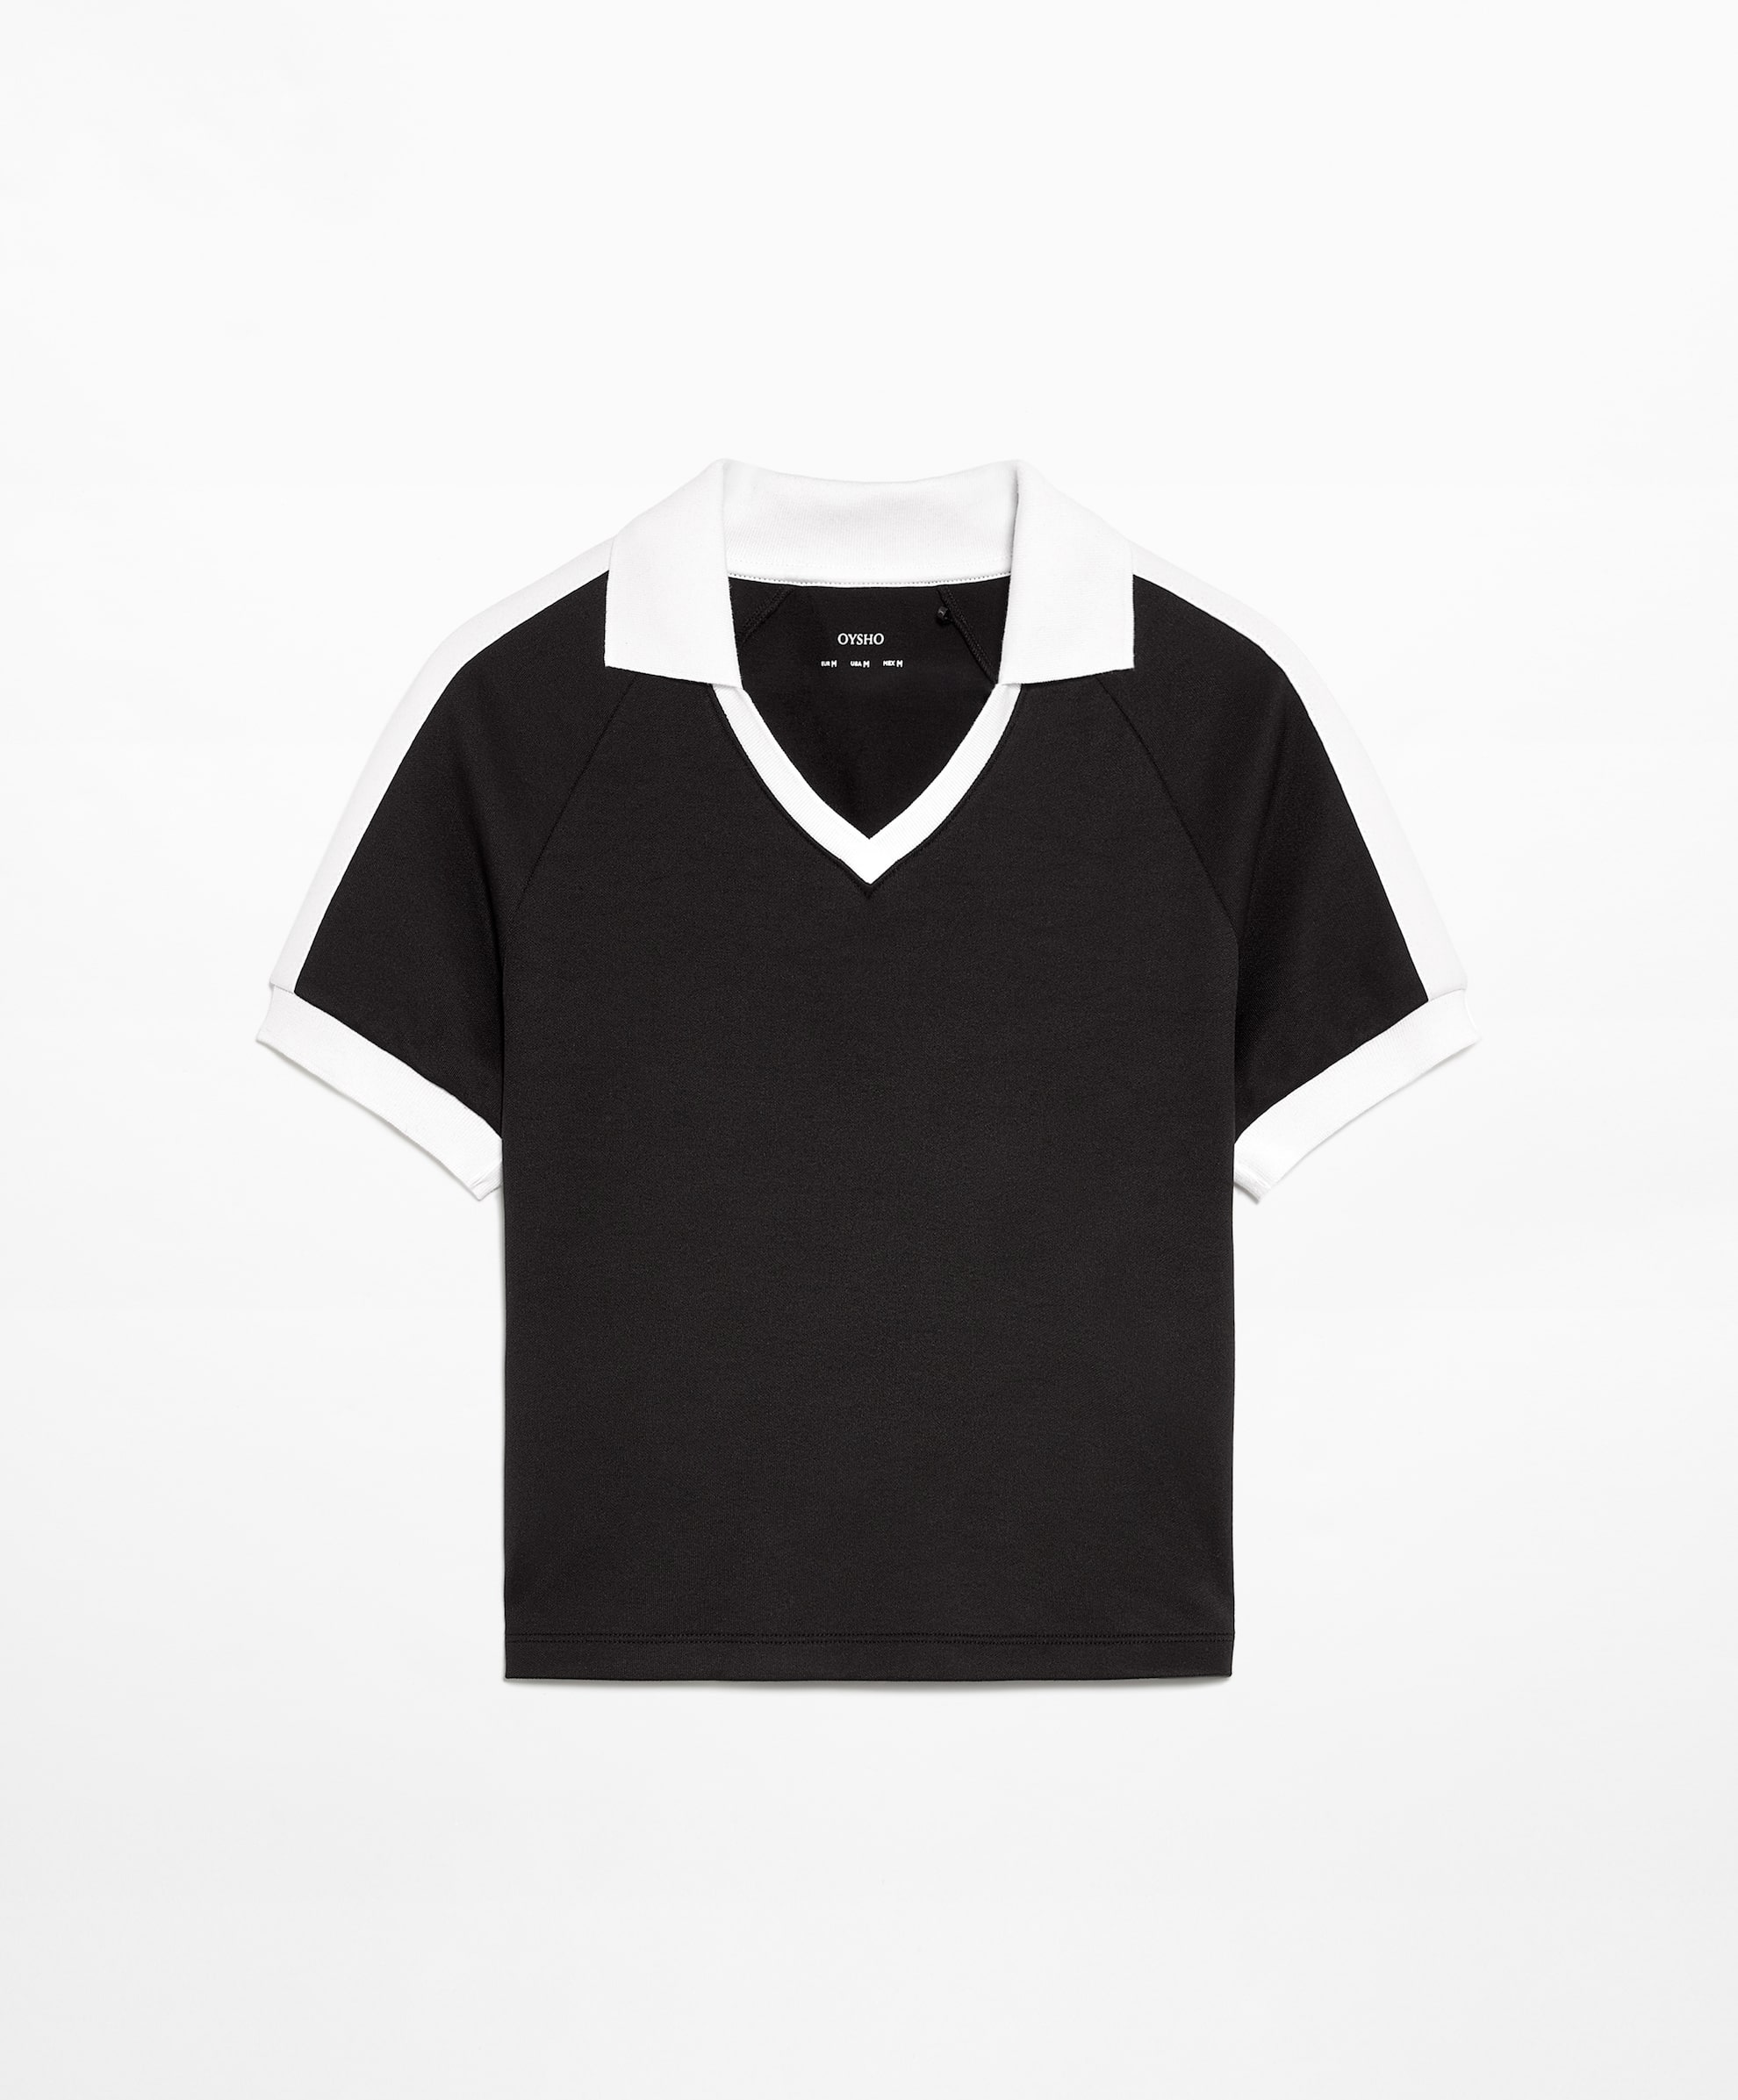 Рубашка-поло Oysho Side Stripe Short-sleeved Crop With Cotton, черный рубашка oysho stretch cotton check with long sleeves коричневый